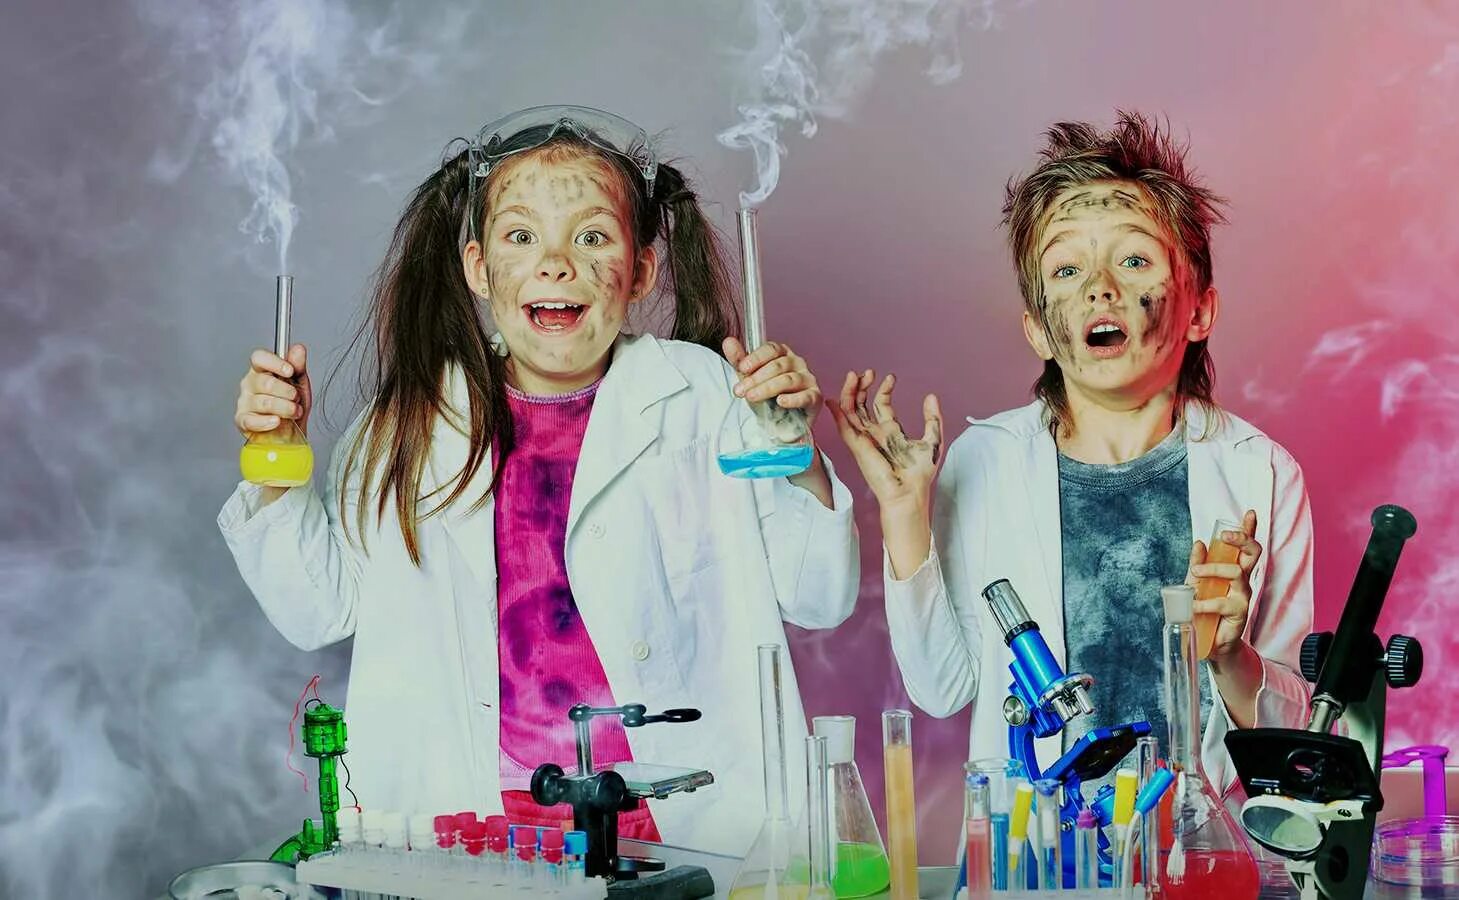 Чокнутые люди 1. Химические опыты для детей. Химическое шоу. Шоу с химическими опытами. Химическое шоу для детей.